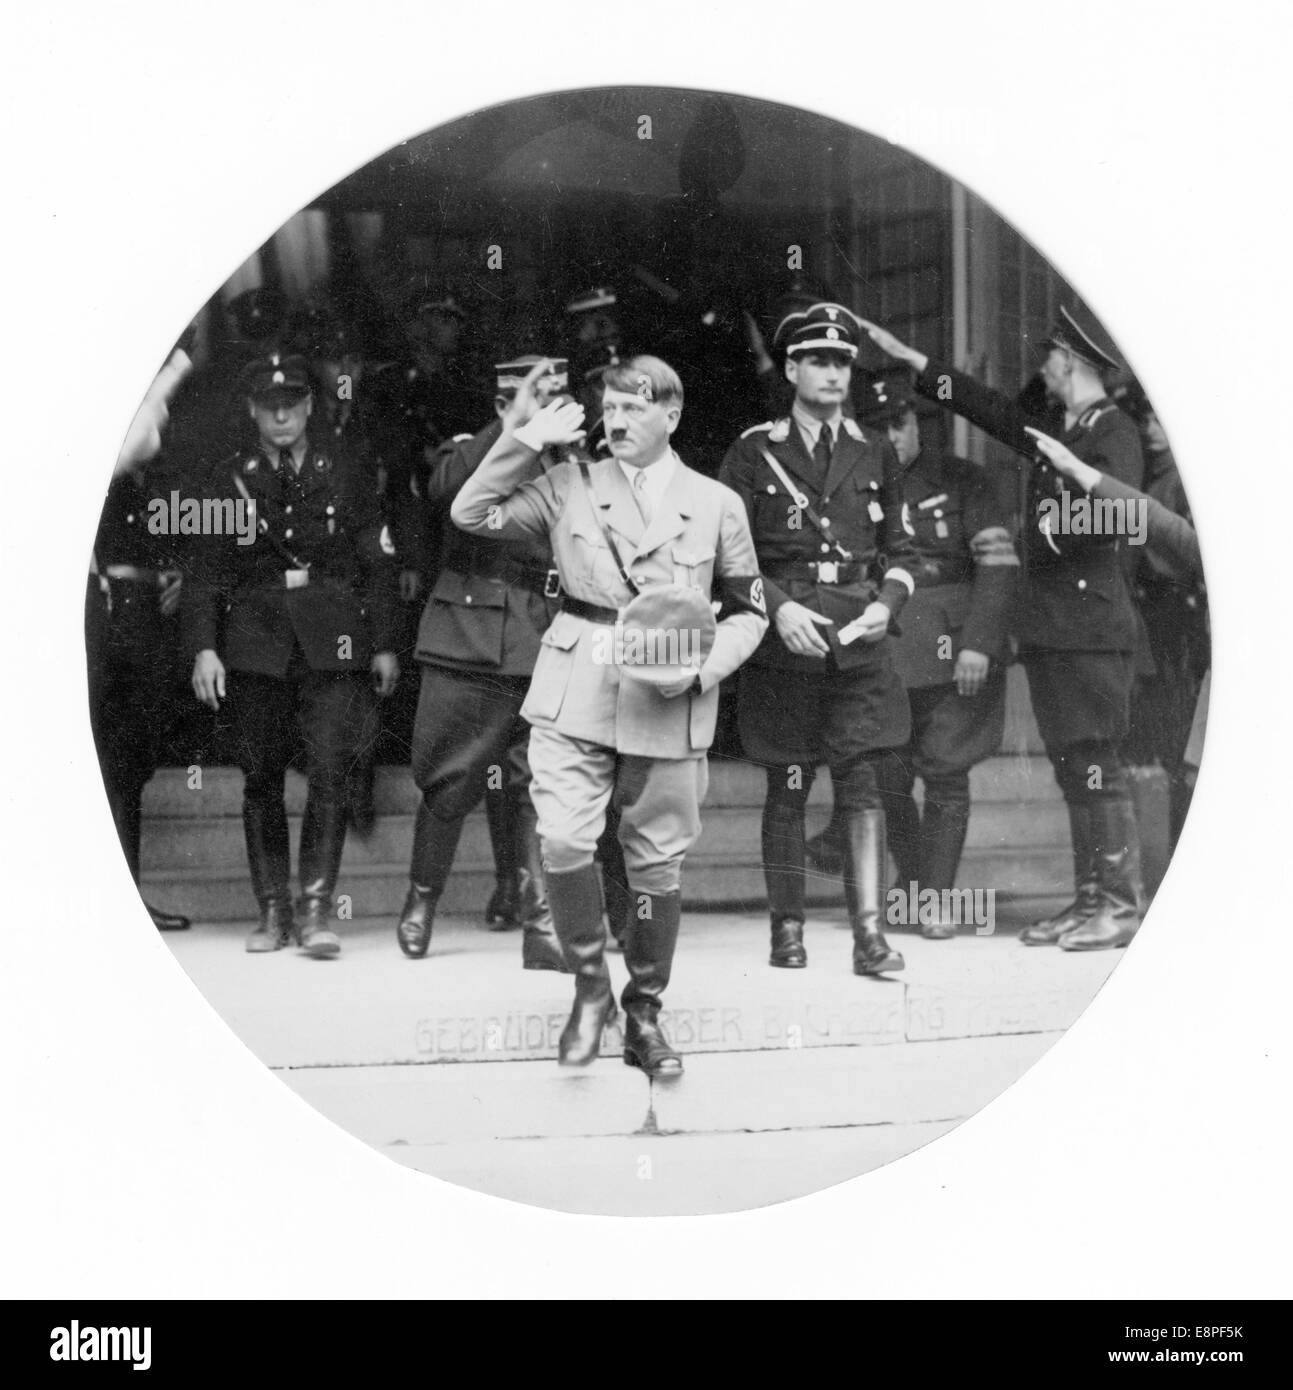 Rallye de Nuremberg 1933 à Nuremberg, Allemagne - Adolf Hitler et son entourage quittent le congrès du parti au Luitpold Hall, sur les lieux de rassemblement du parti nazi. À droite d'Hitler : le ministre Reich Rudolf Hess. (Défauts de qualité dus à la copie historique de l'image) Fotoarchiv für Zeitgeschichtee - PAS DE SERVICE DE FIL - Banque D'Images